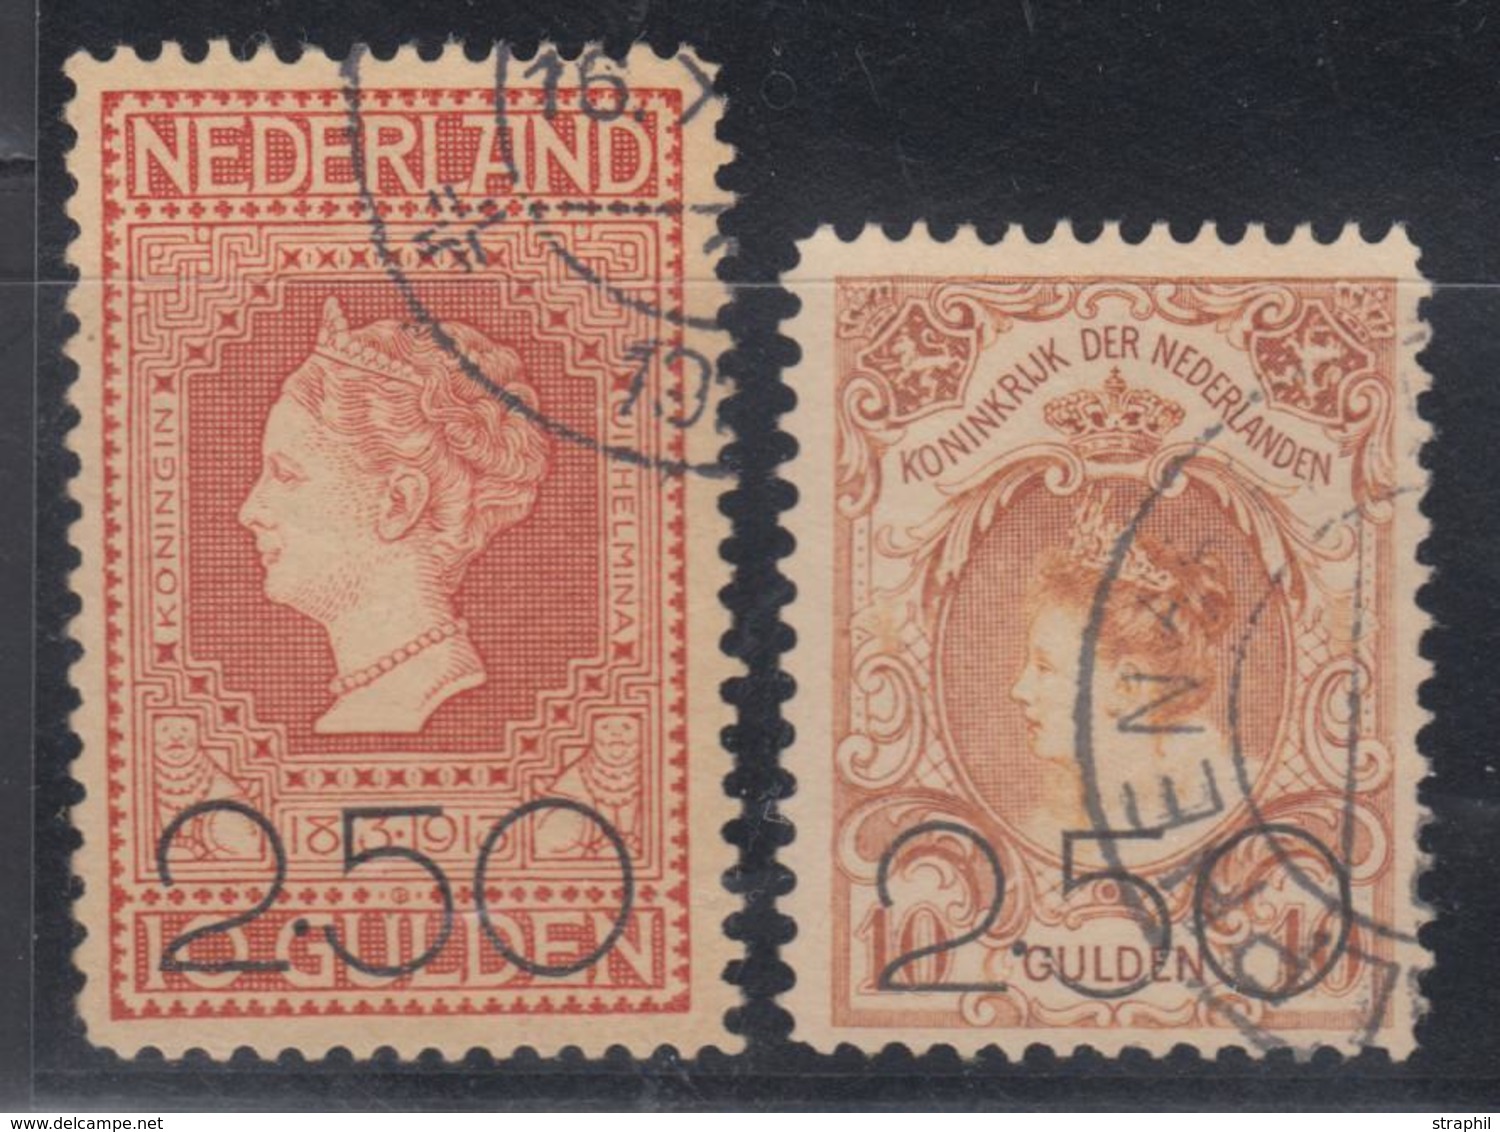 O N°96/97 - 2 Val - TB - Unused Stamps